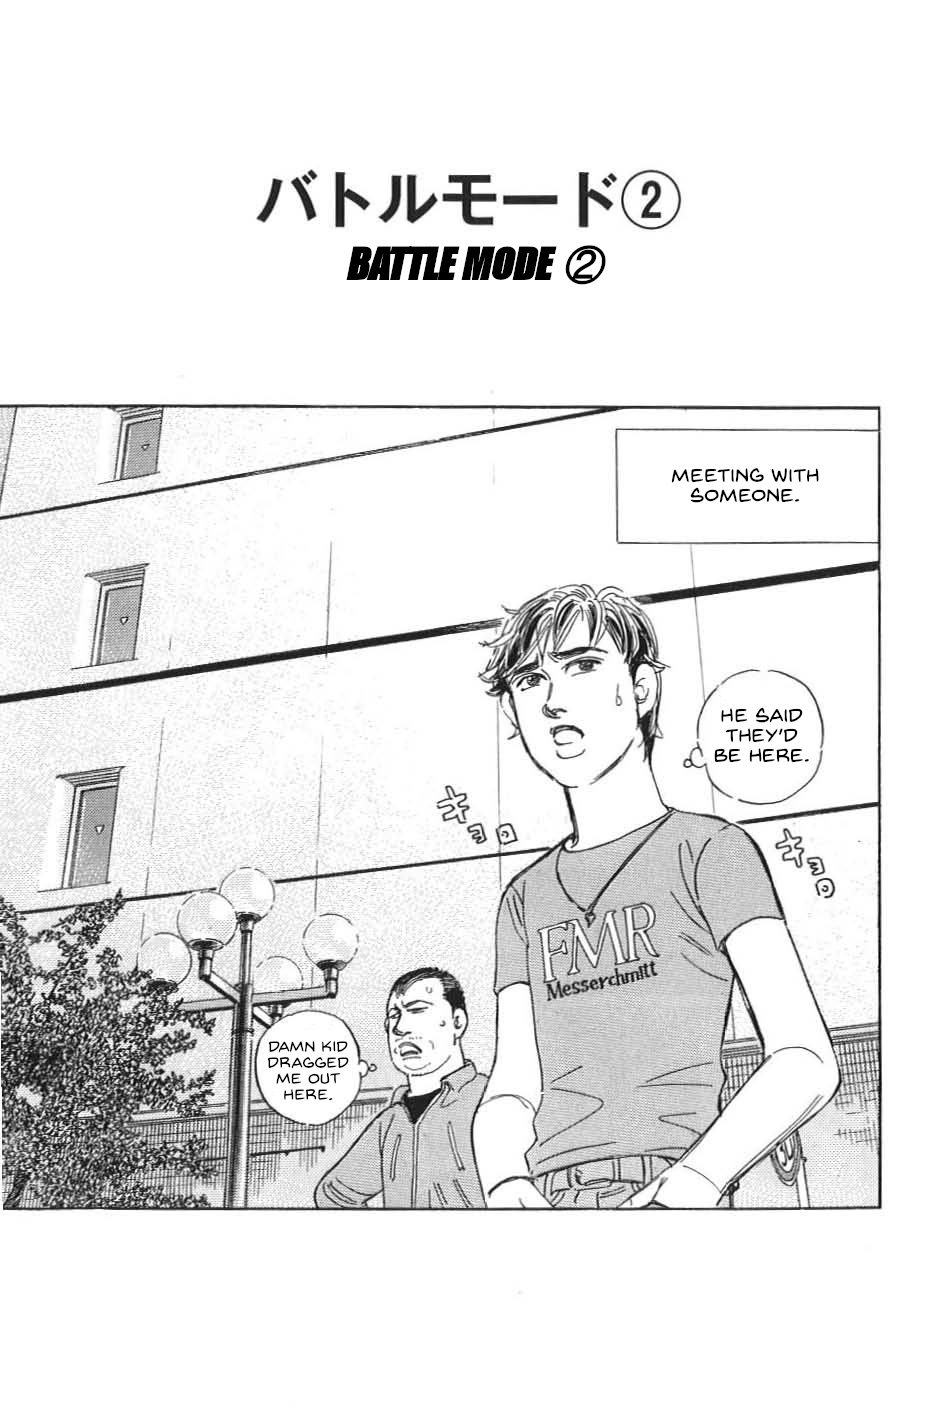 Wangan Midnight: C1 Runner Vol.2 Chapter 19: Battle Mode ② - Picture 1